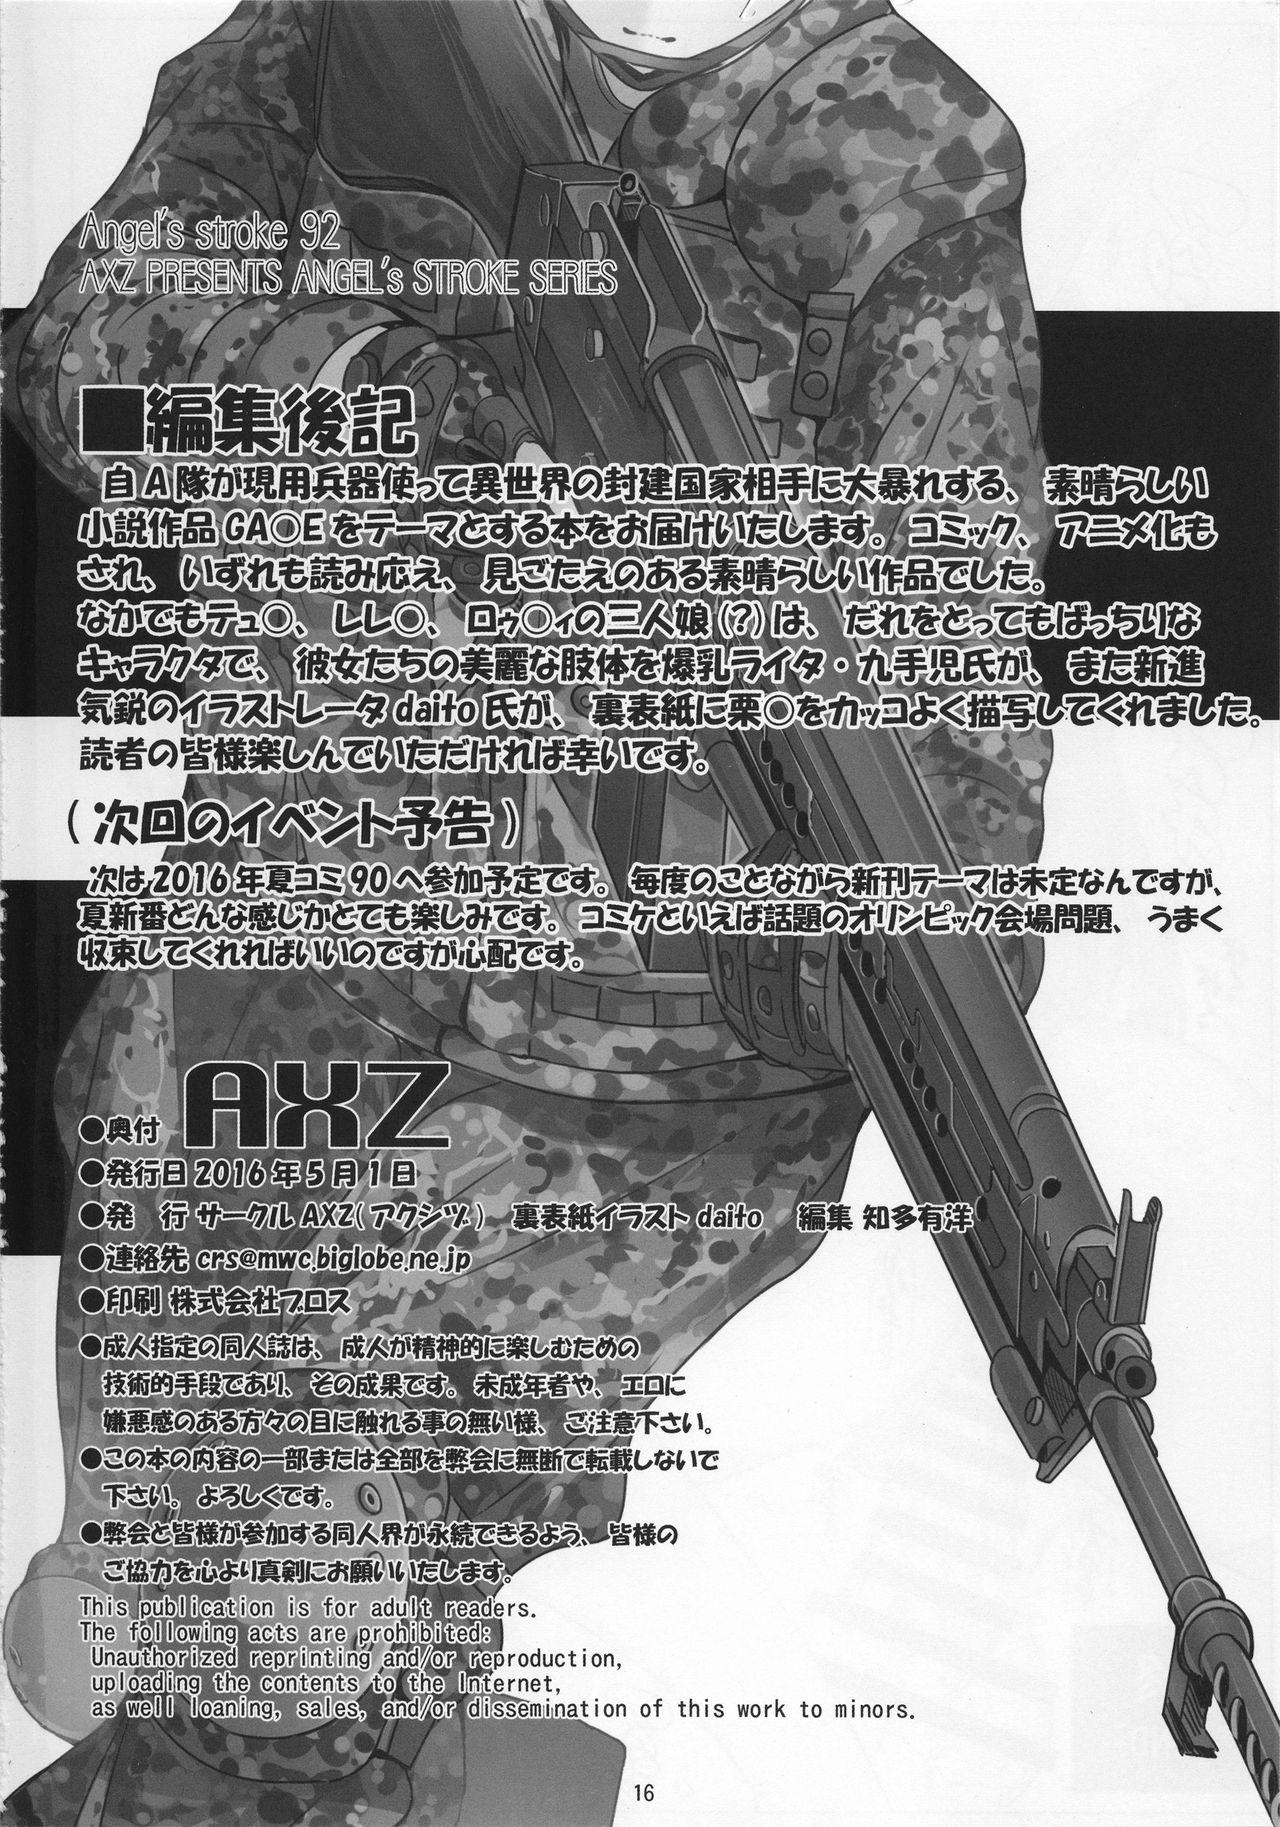 Rubdown Angel's stroke 92 G2 - Gate - jietai kano chi nite kaku tatakaeri Korea - Page 17